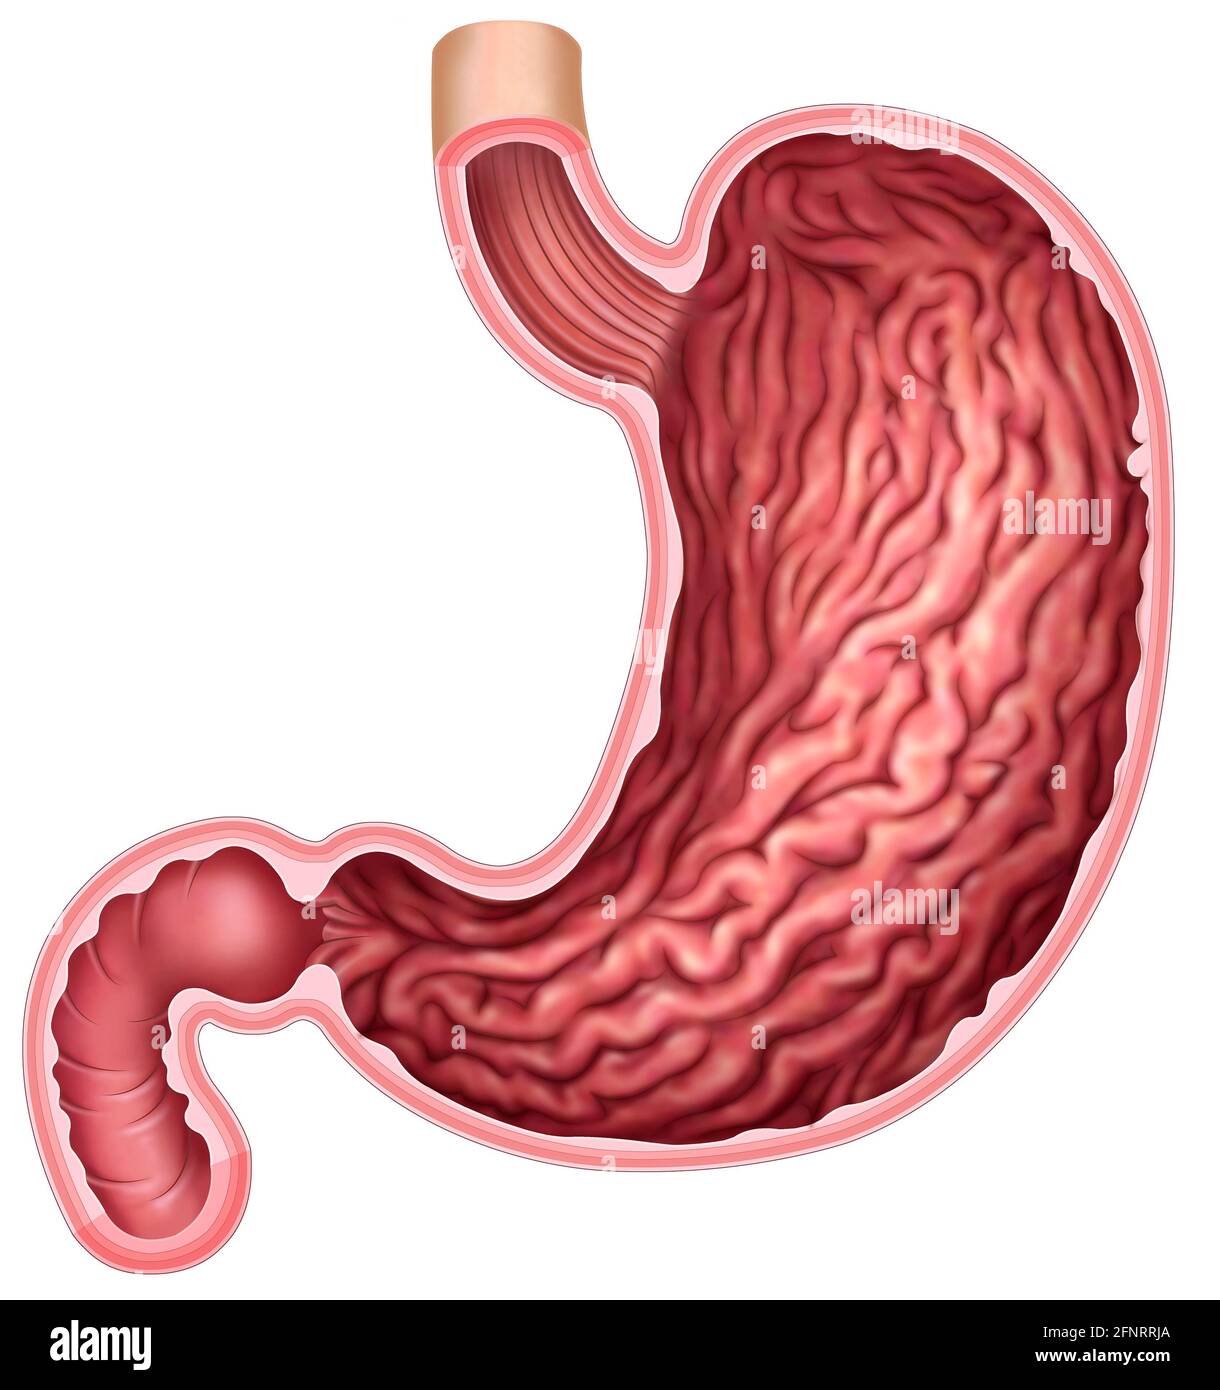 illustrazione e anatomia dello stomaco umano. Lo stomaco è la parte del sistema digestivo, si occupa di disgregare e macinare il cibo. Foto Stock